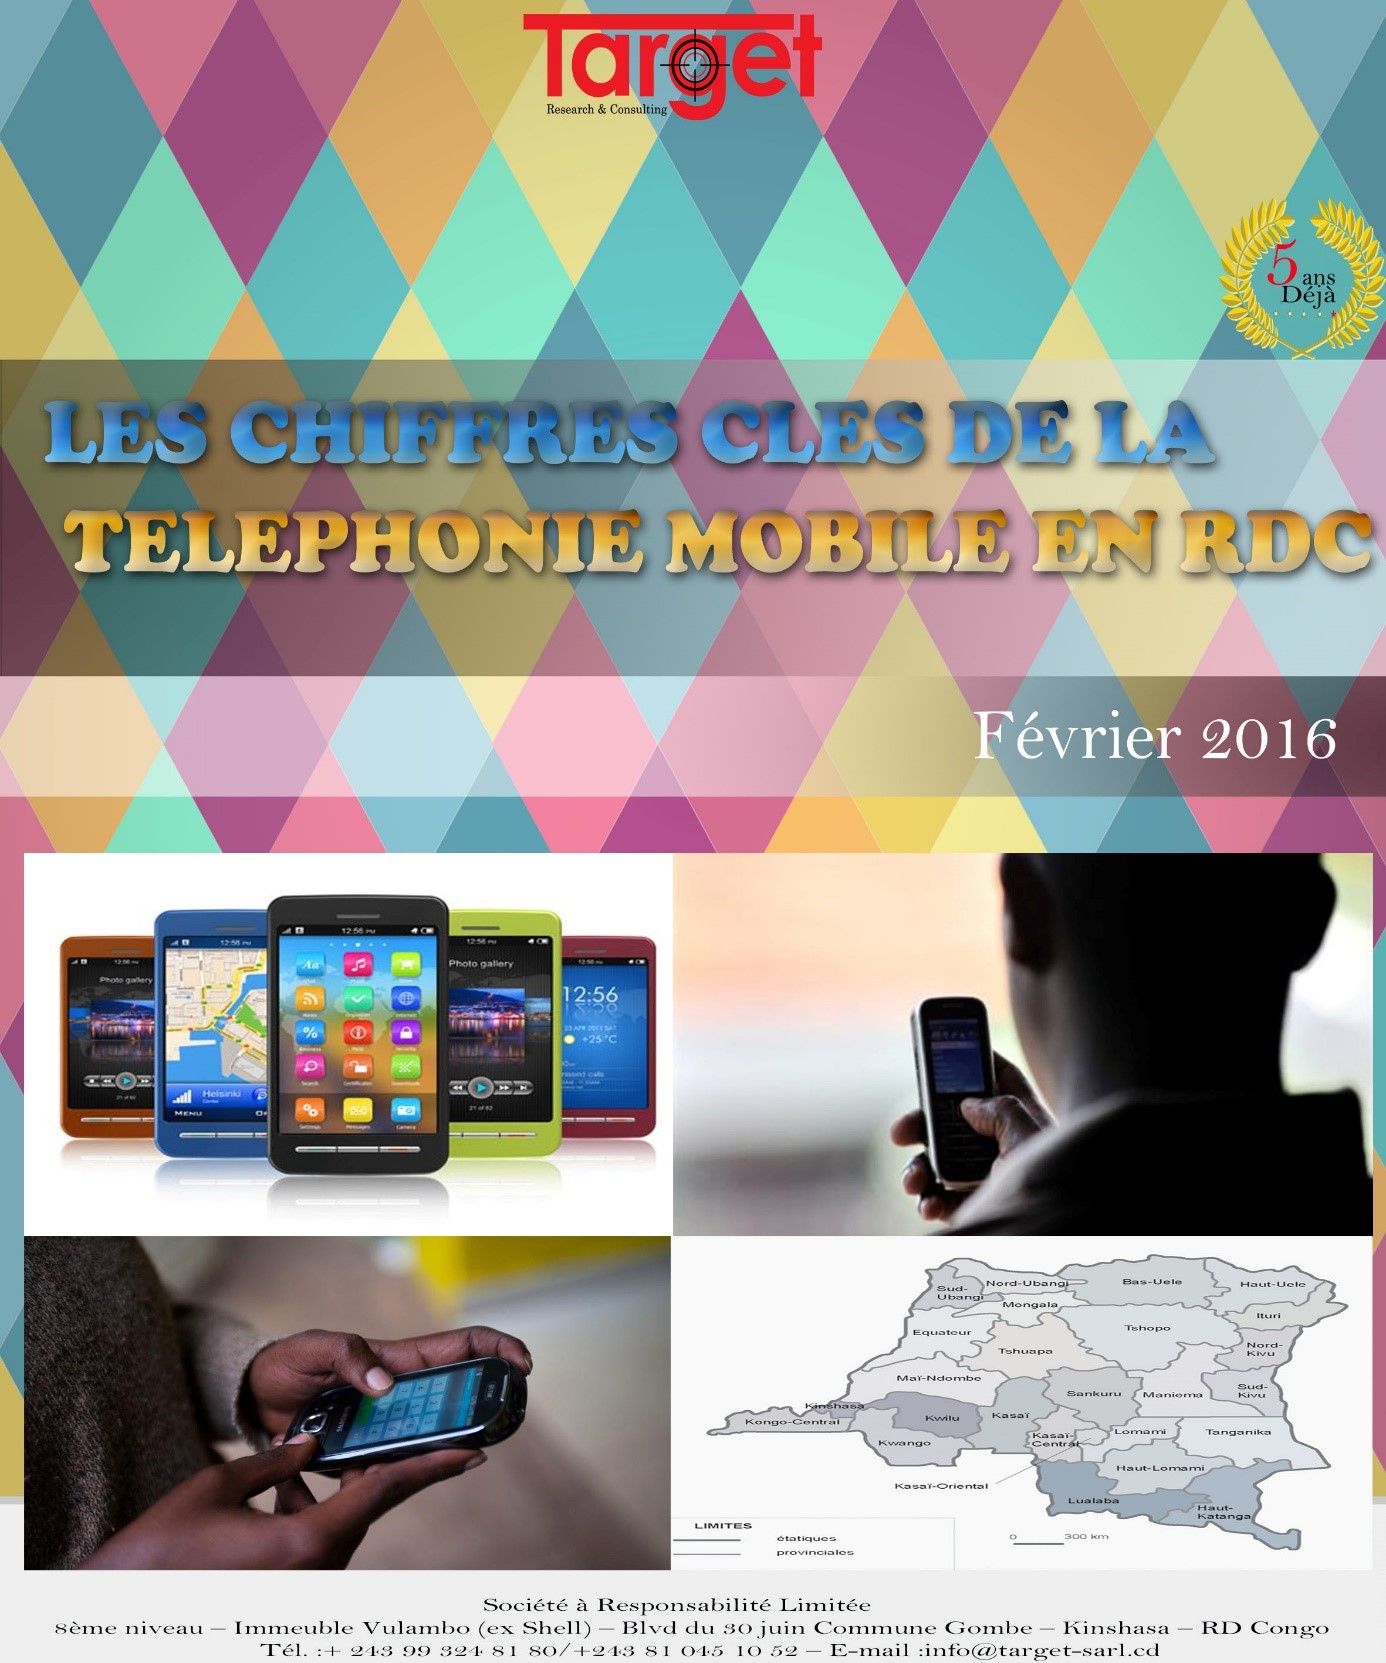 Etude sur la téléphonie mobile en RDC